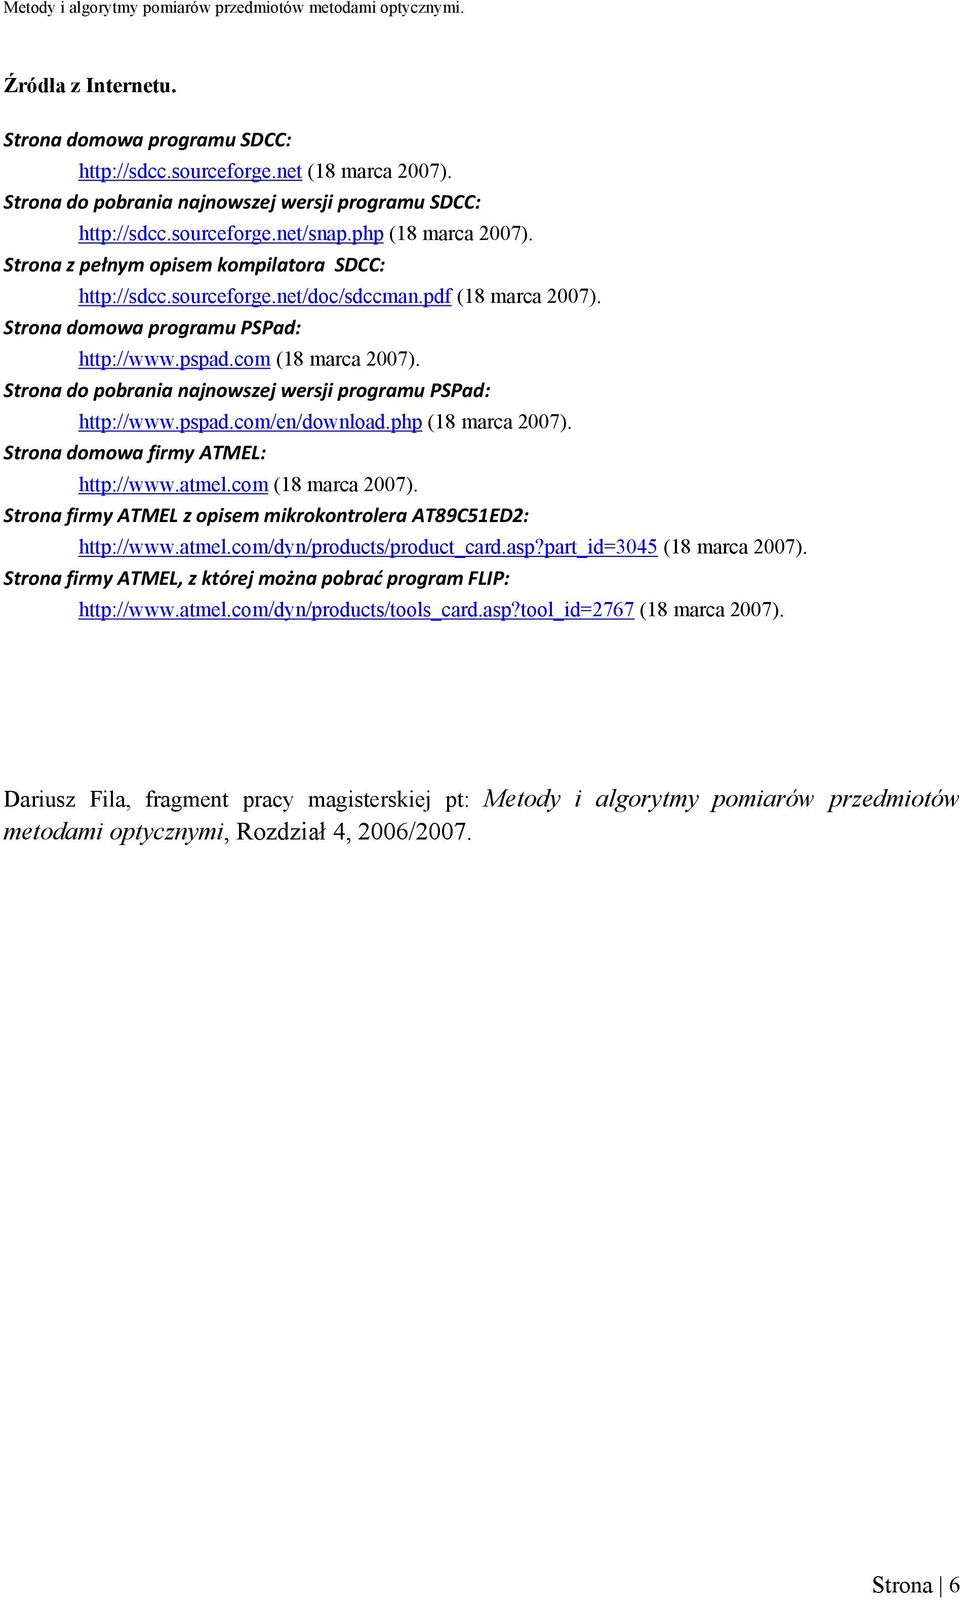 Strona do pobrania najnowszej wersji programu PSPad: http://www.pspad.com/en/download.php (18 marca 2007). Strona domowa firmy ATMEL: http://www.atmel.com (18 marca 2007).